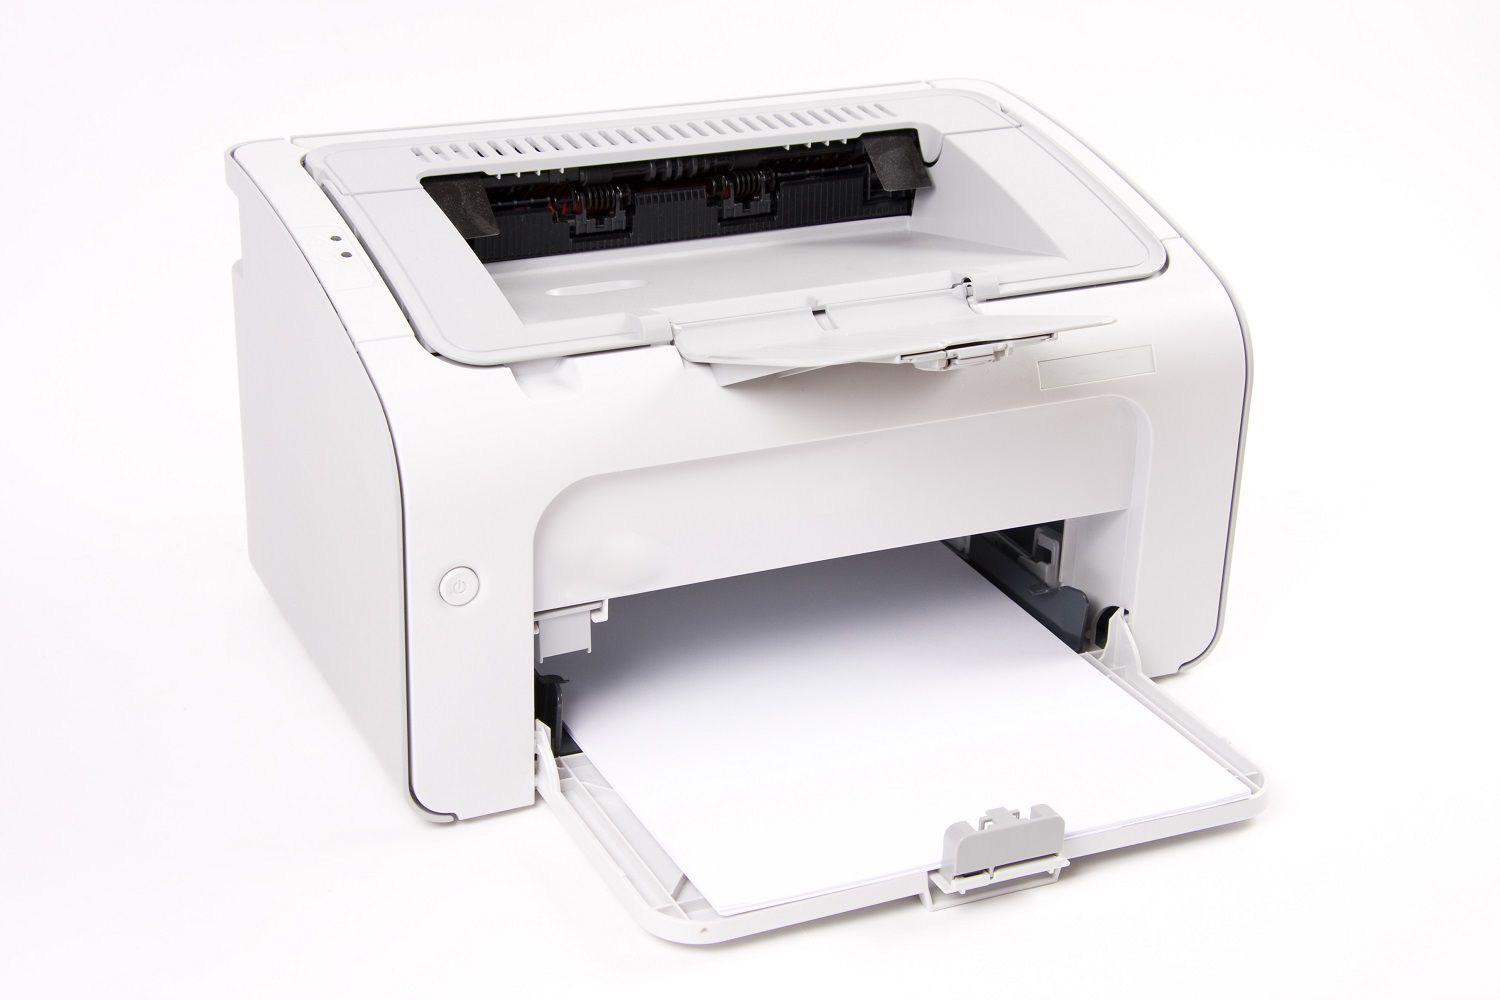 Foto van een witte laserprinter met wit kopieerpapier erin.